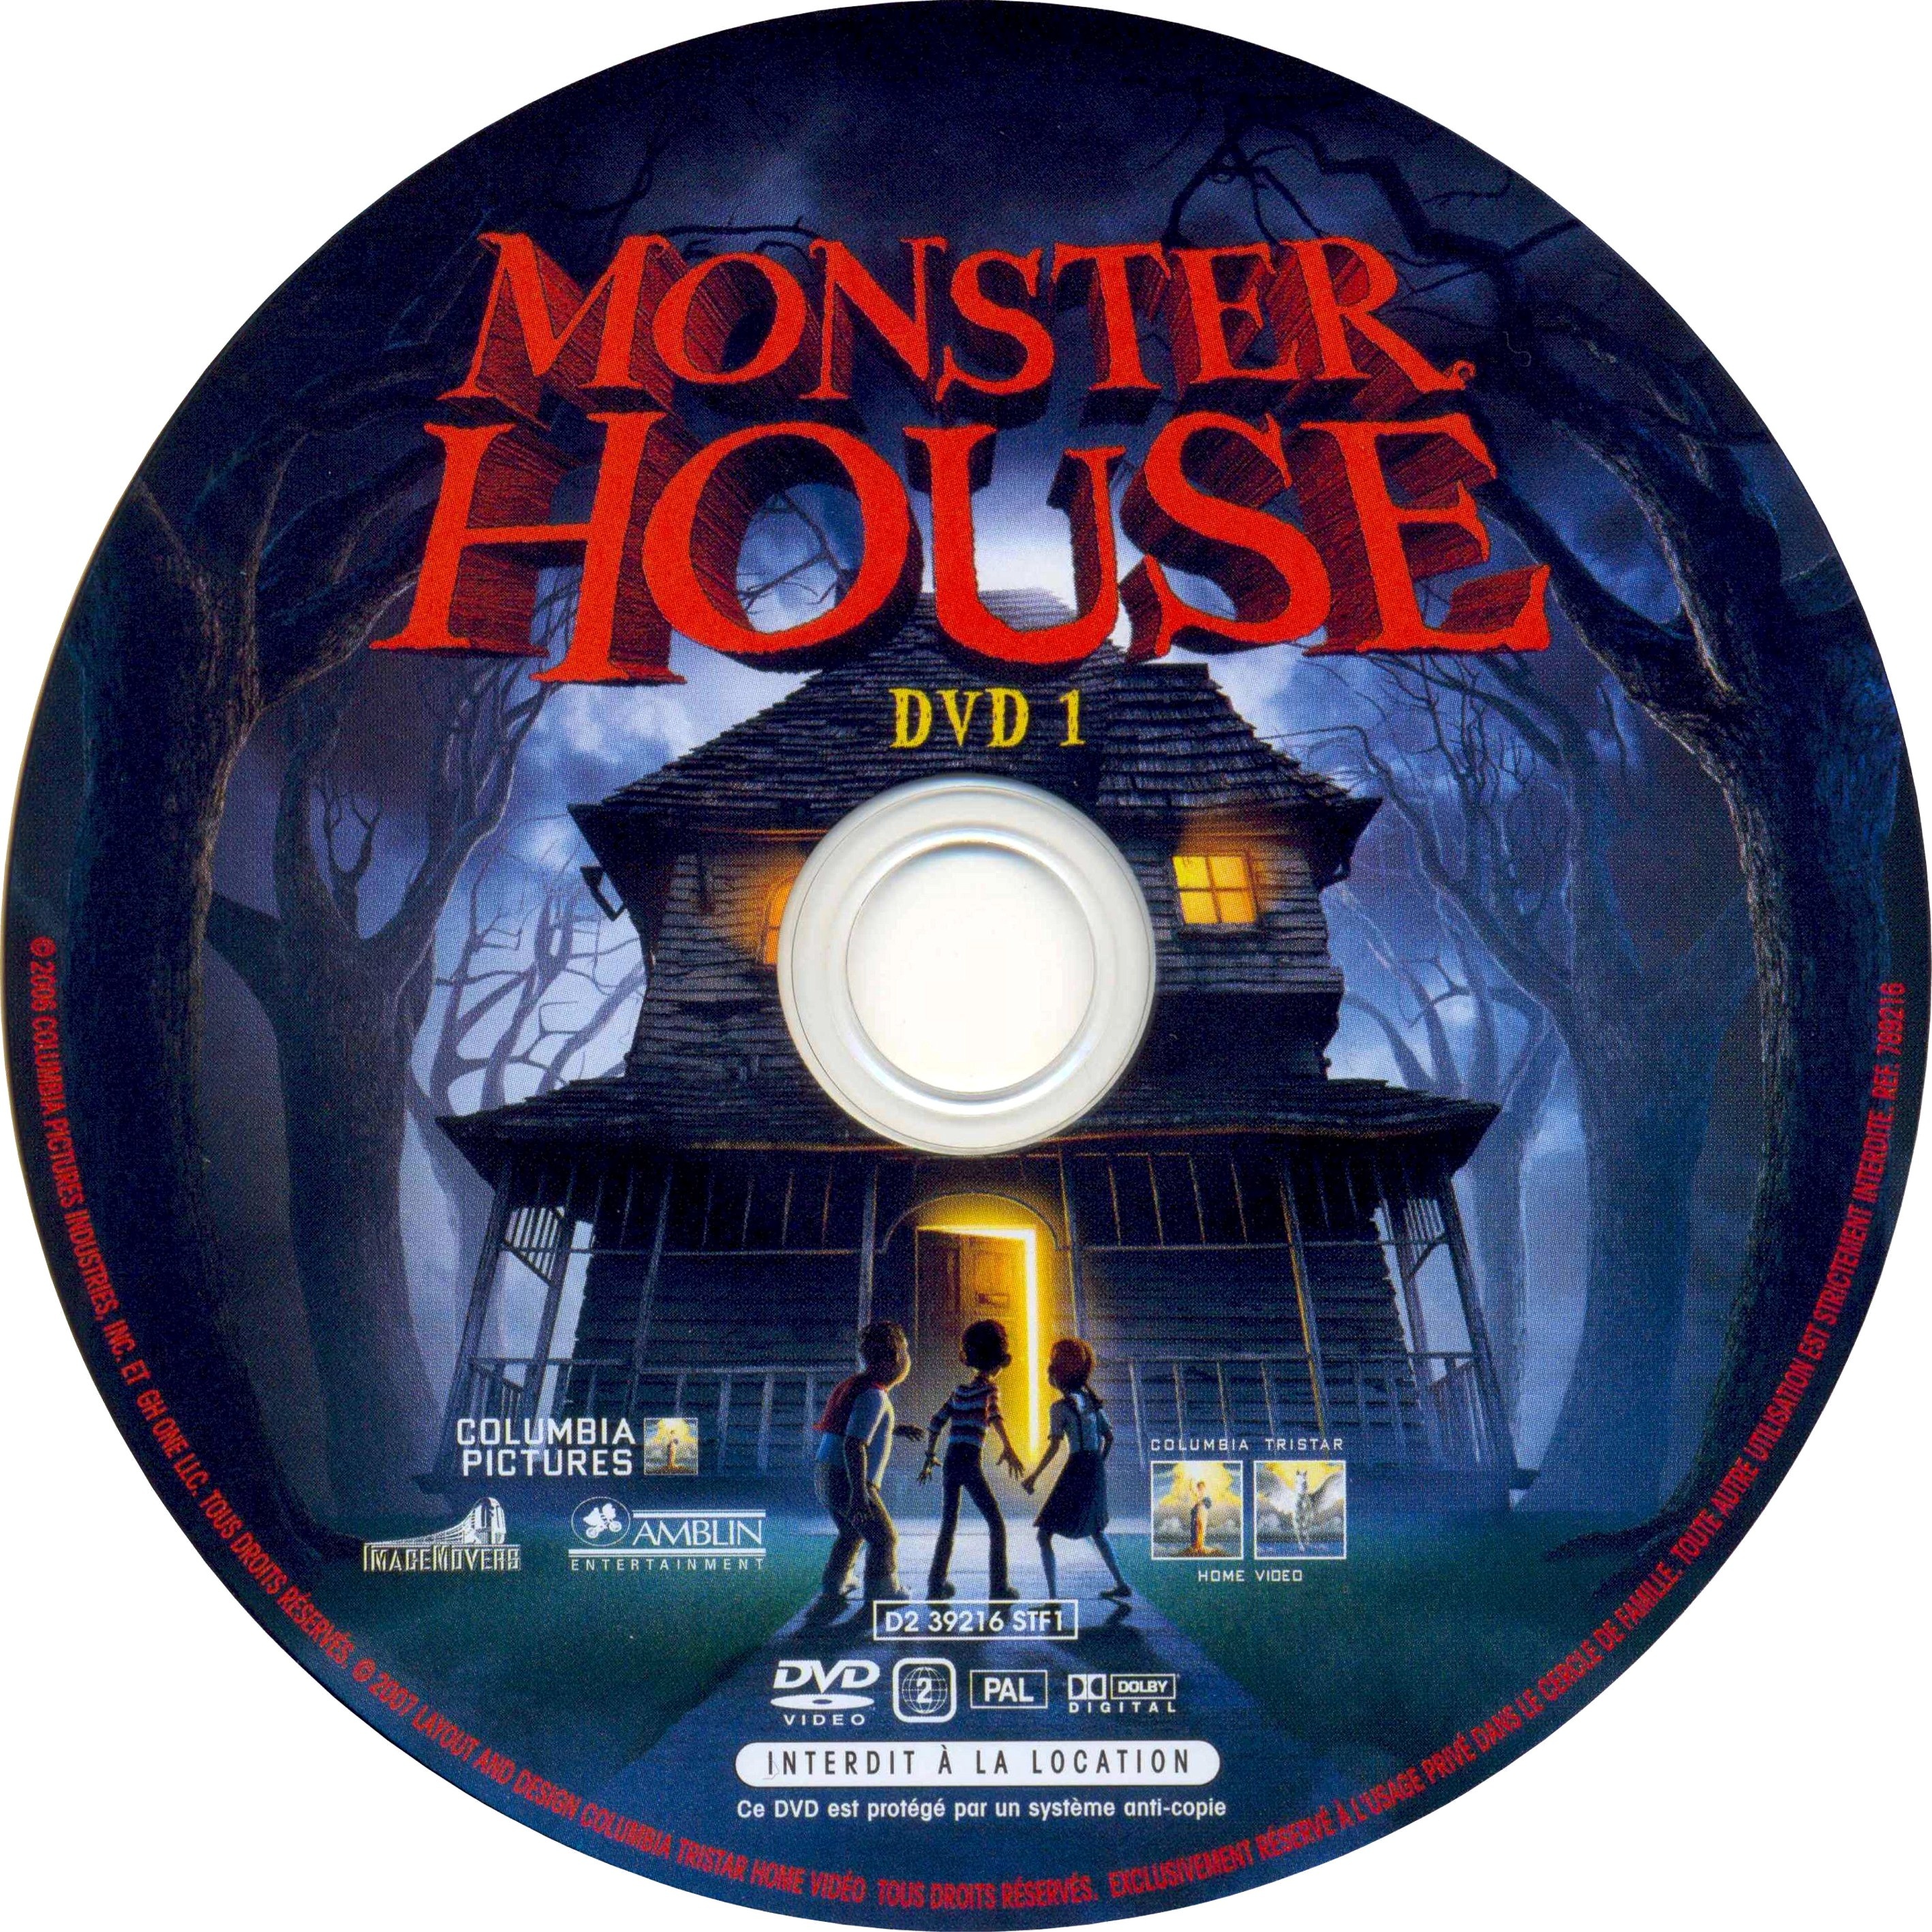 Monster house DISC 1